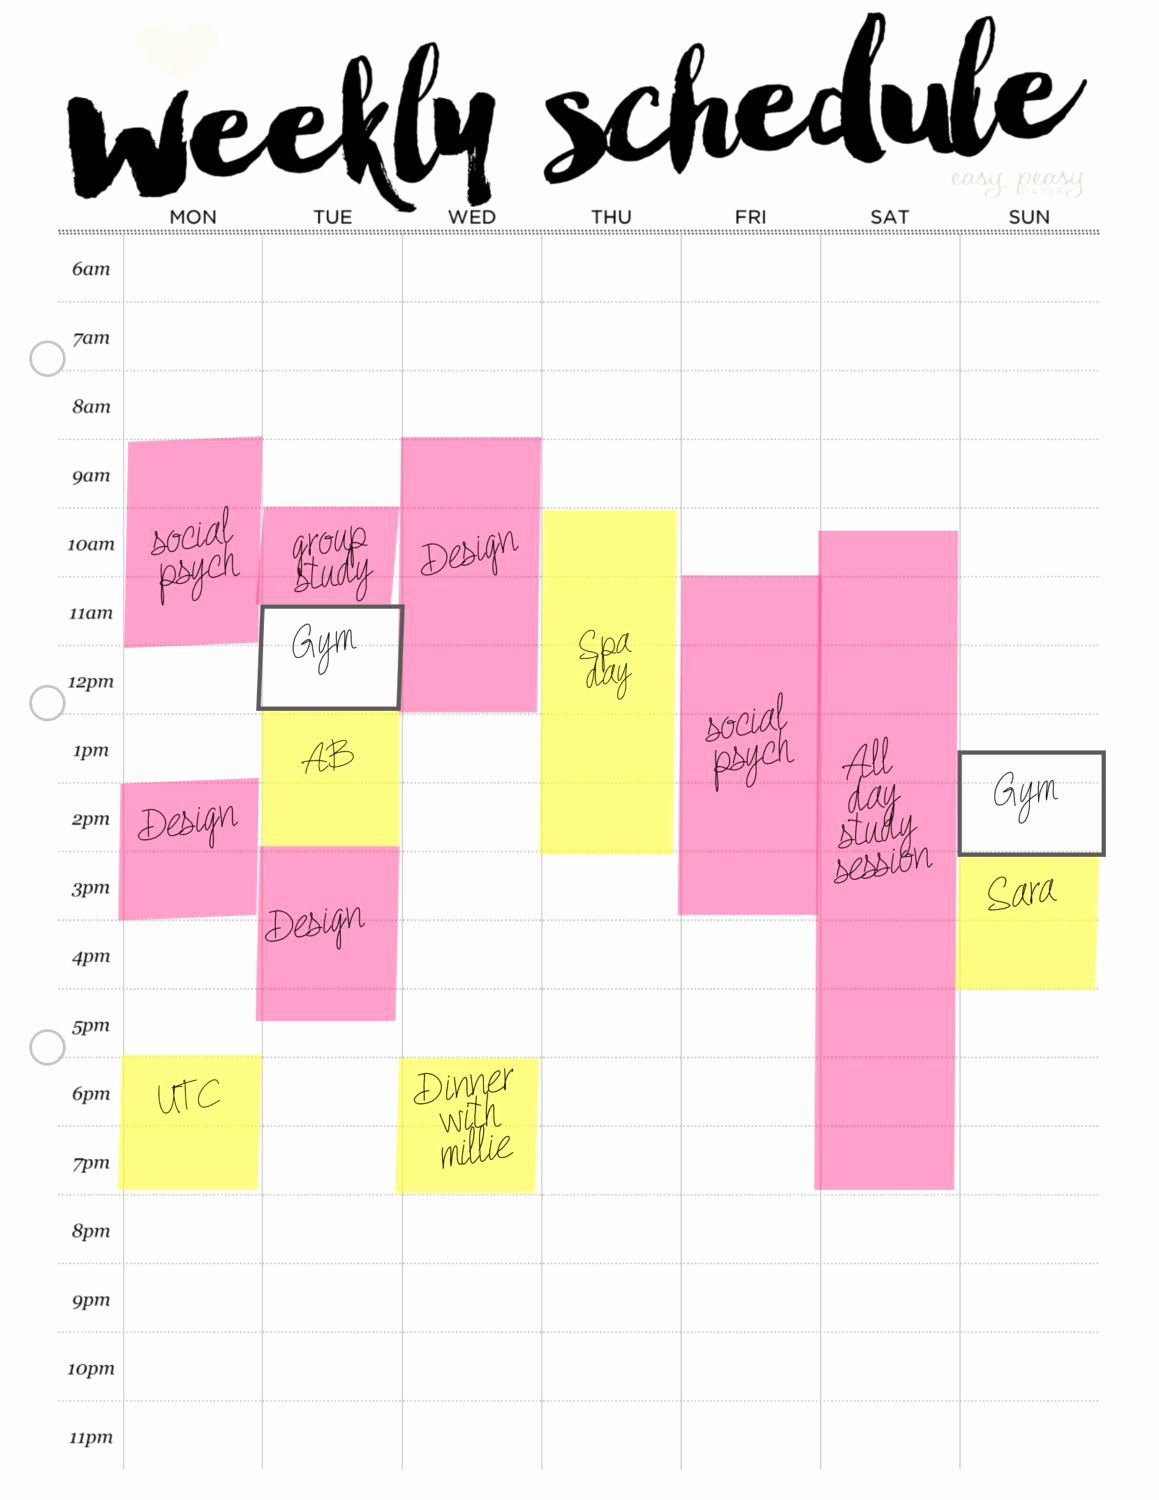 Weekly Study Schedule Template Luxury Weekly Schedule Printable Weekly Timetable Ideal Week